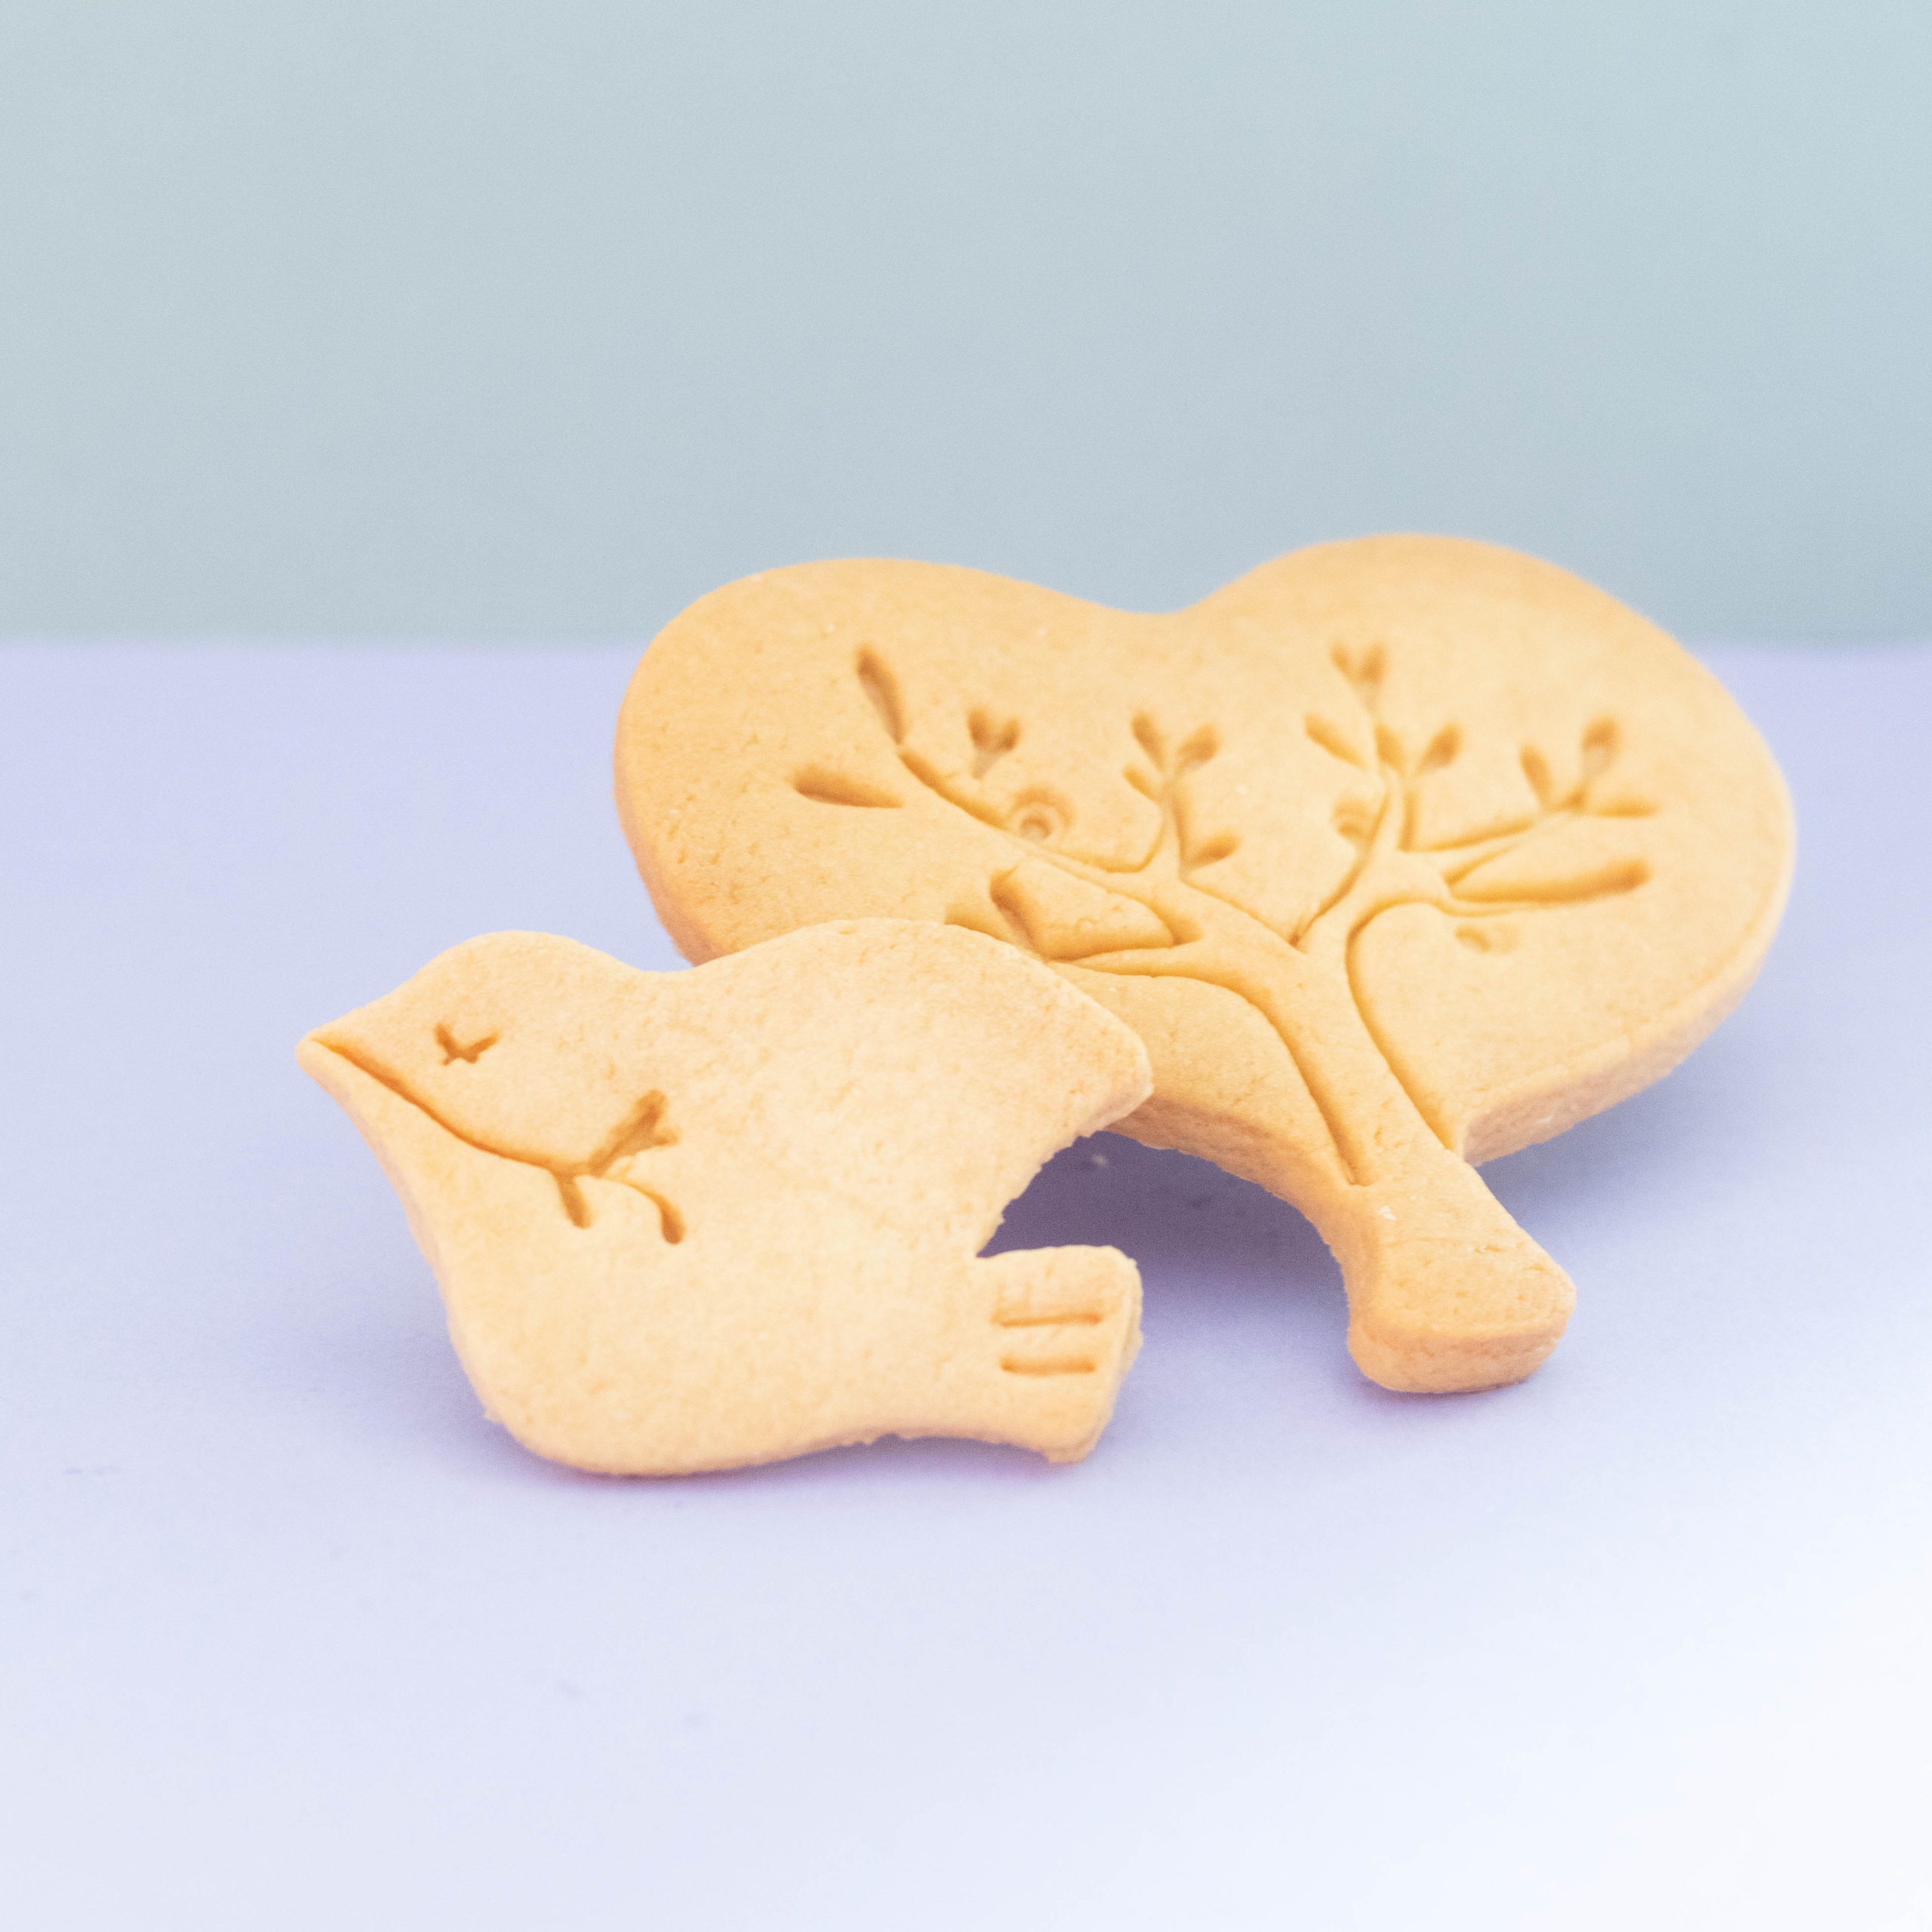 神戸 オーダーメイドクッキー型、クッキー型販売の「fuapri -フアプリ-」